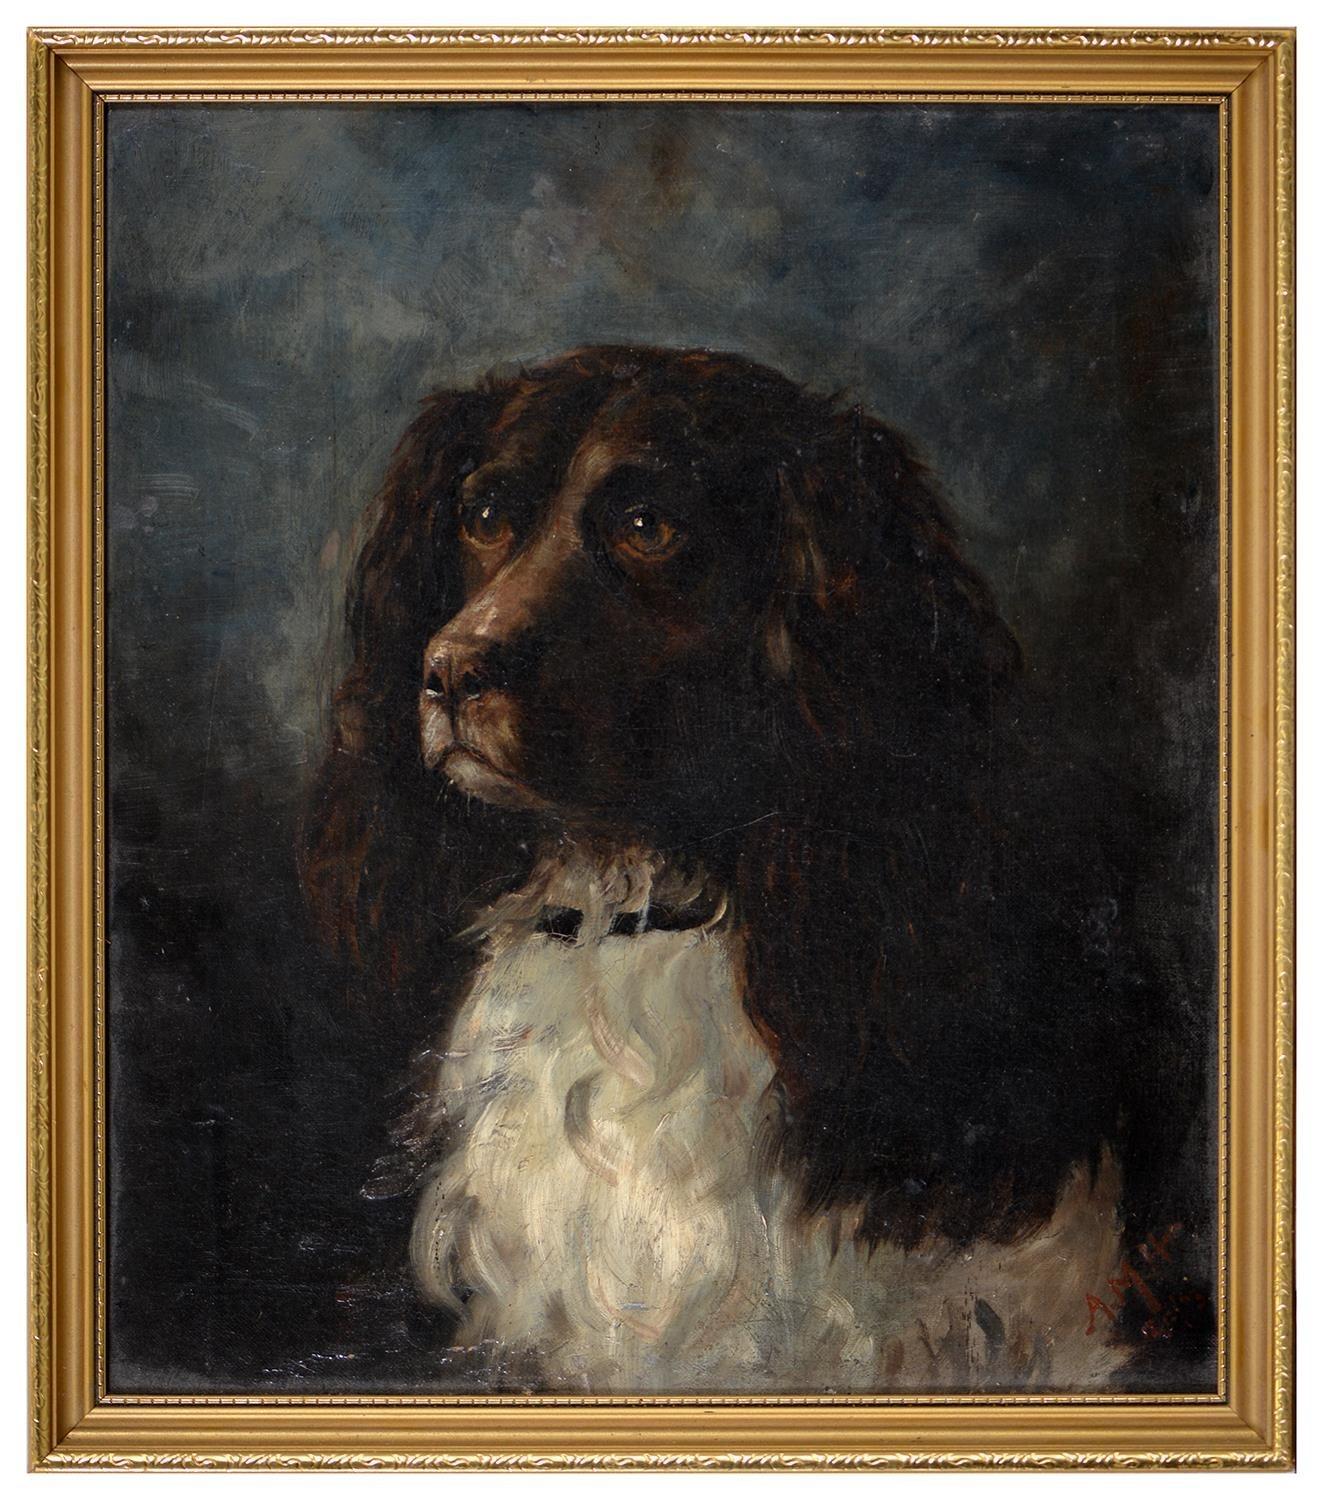 Viktorianisches Hundegemälde, 19. Jahrhundert, englisches Ölgemälde, Spaniel, Hund – Painting von 19th C. English